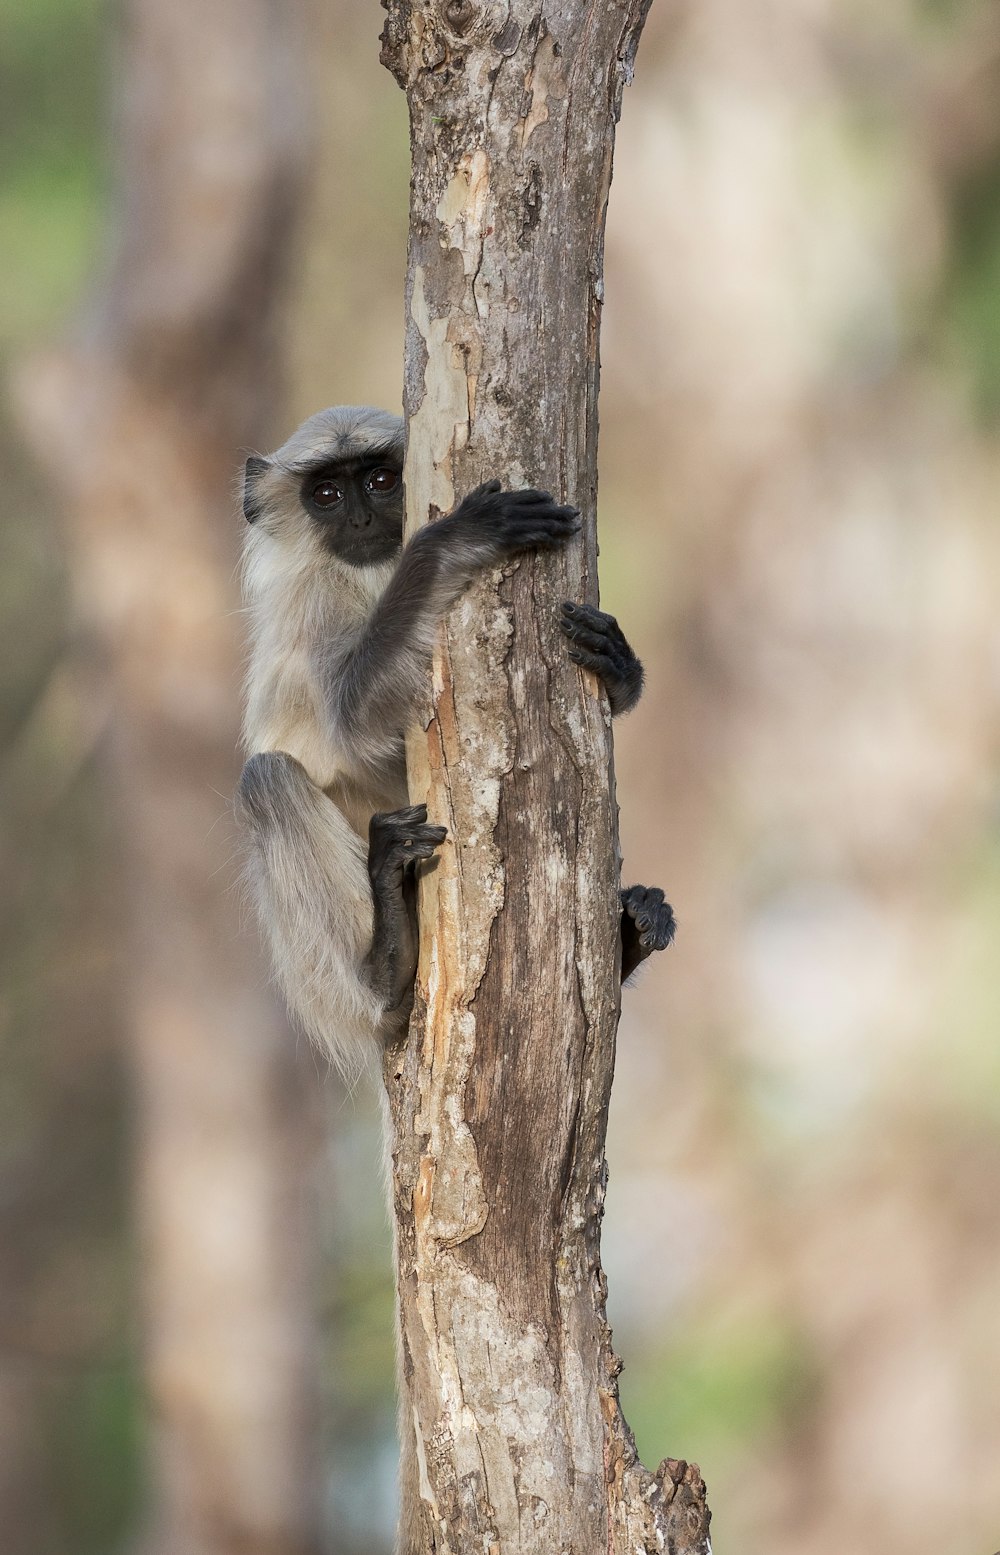 mono gris trepando en la rama